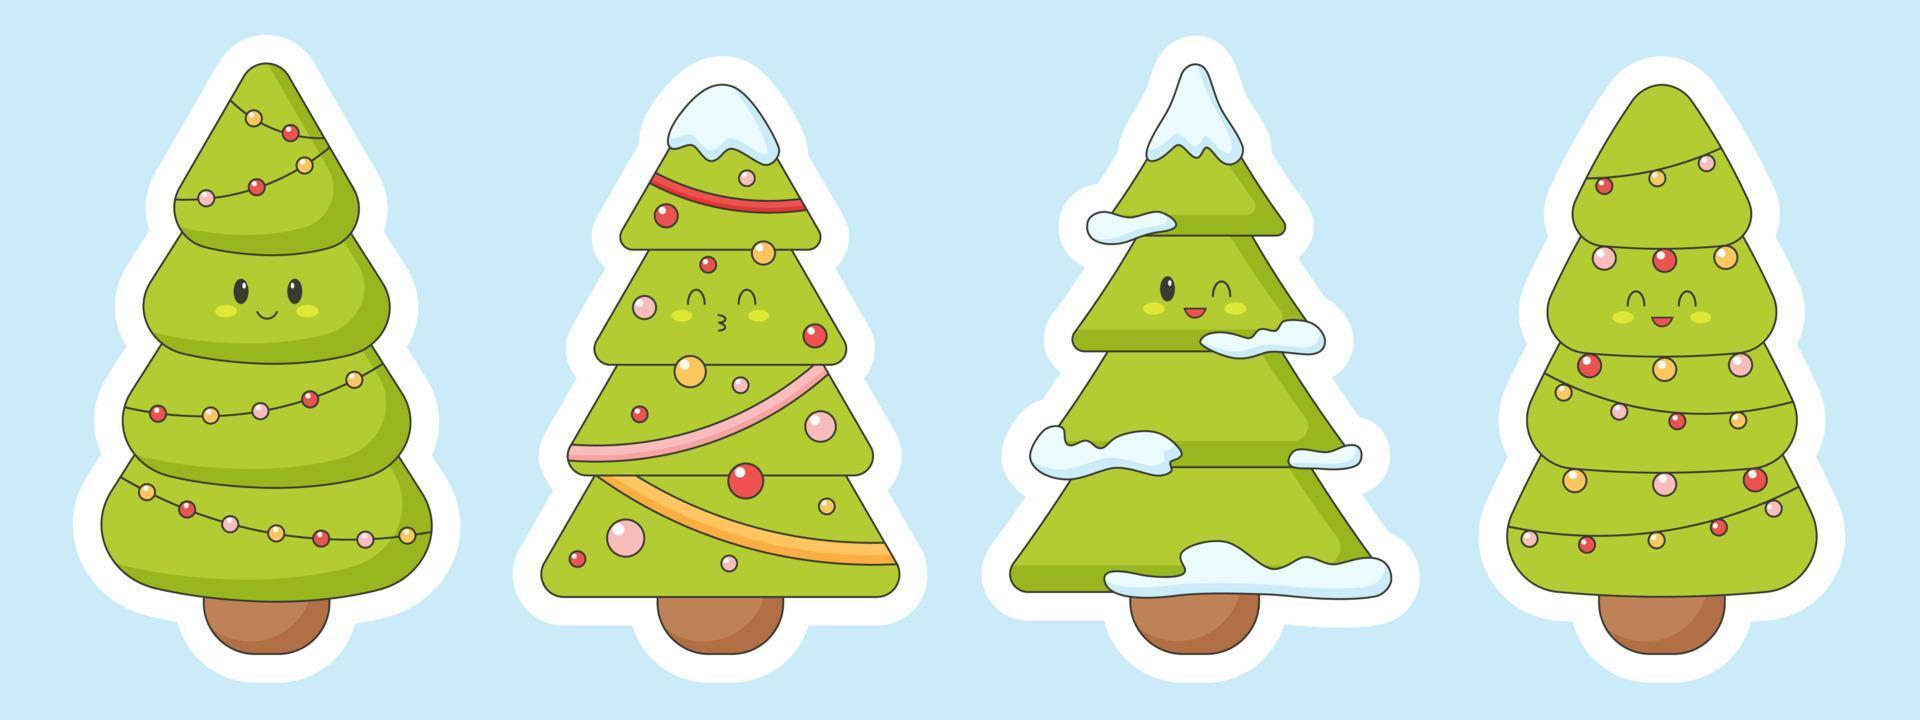 ensemble d'arbres de Noël mignons dans un style kawaii. autocollants avec différentes émotions. vecteur plat avec contour blanc, isolé.